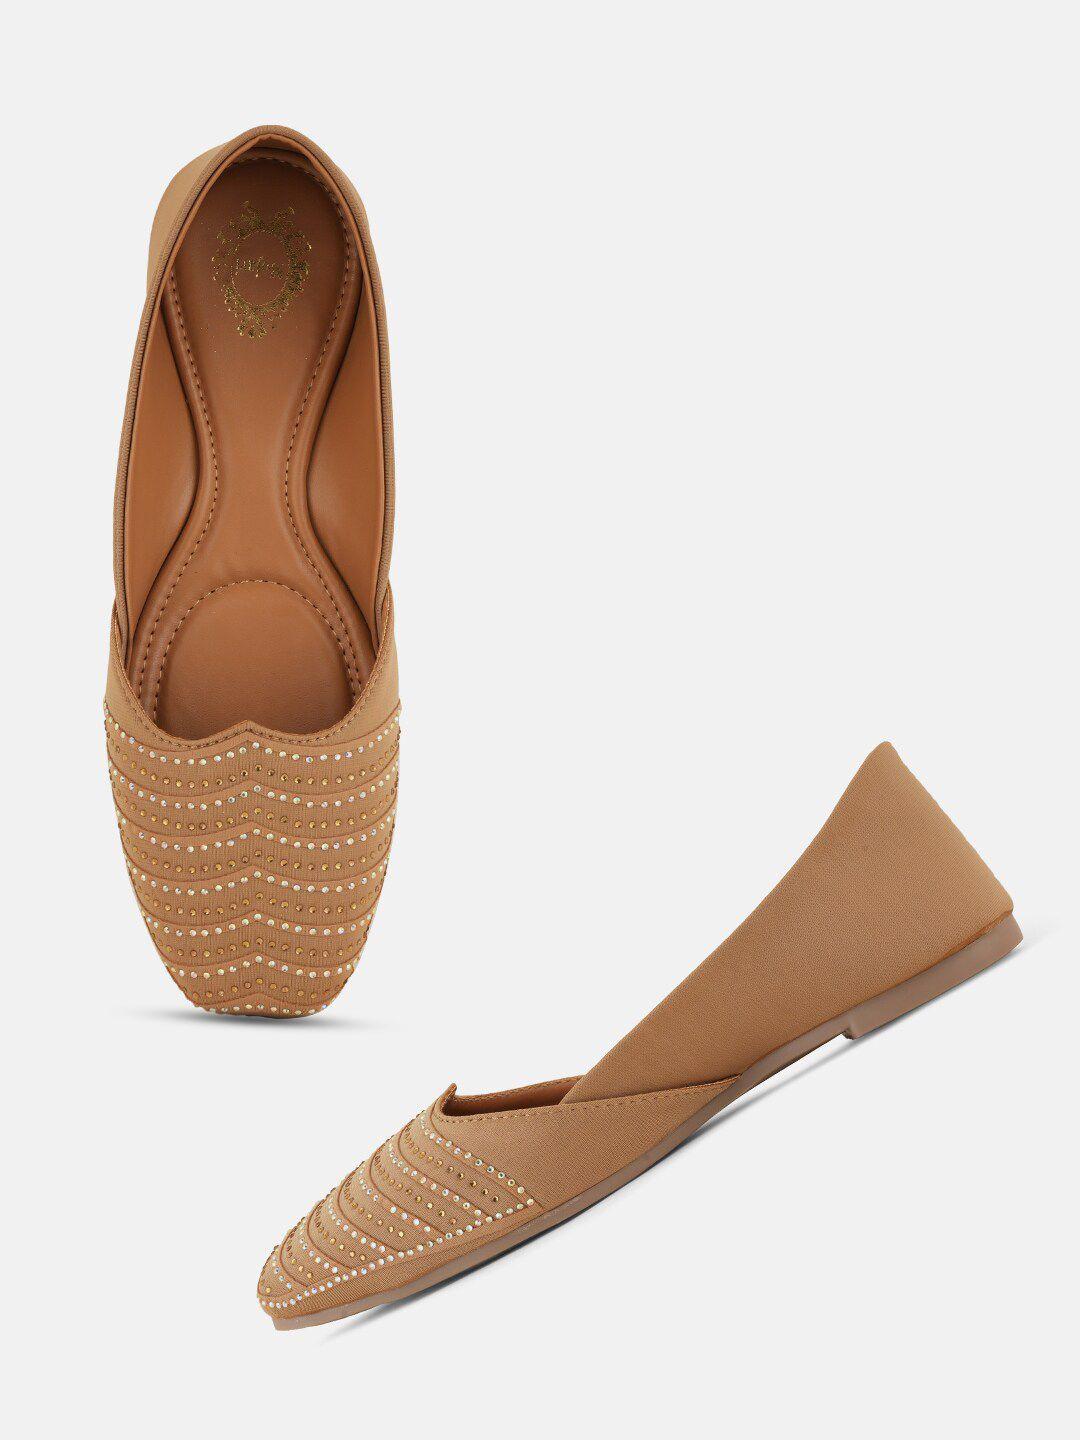 style-shoes-embellished-mojaris